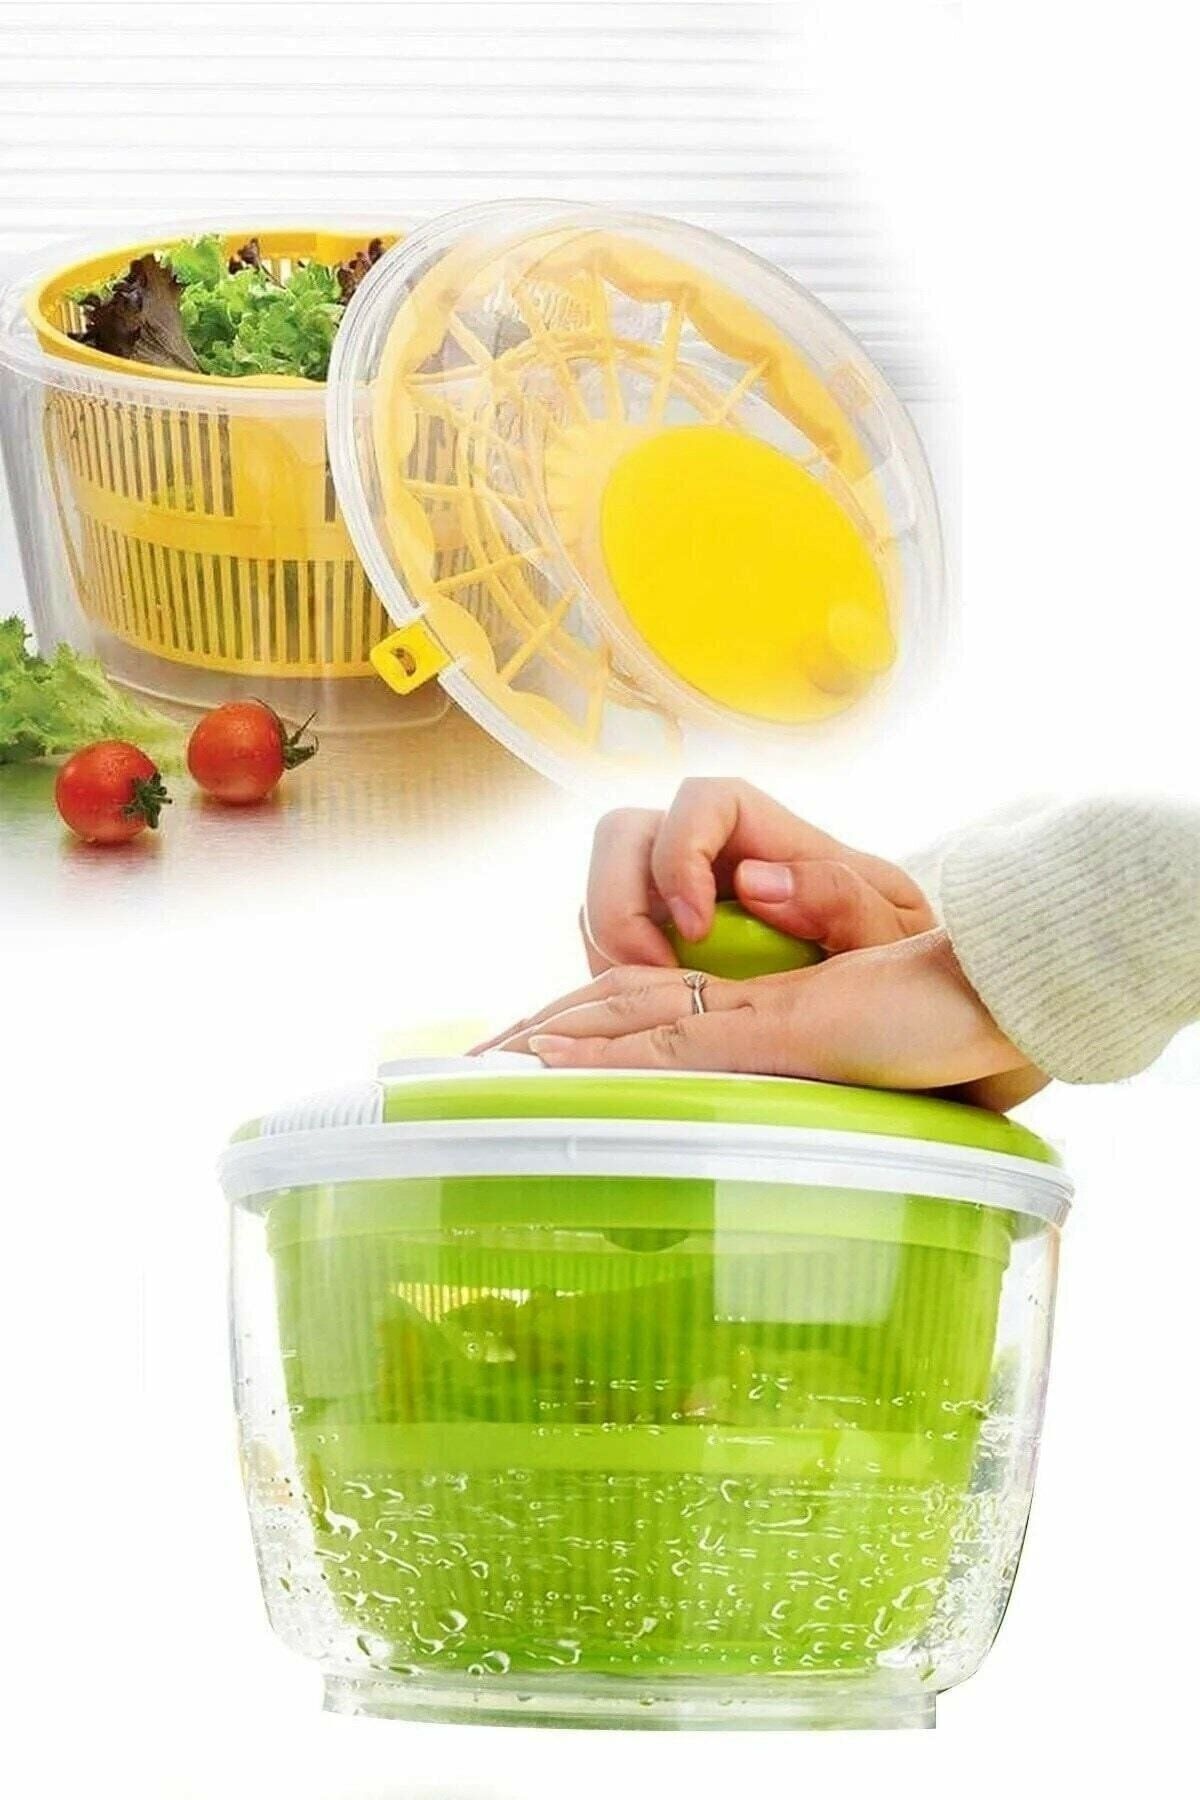 GAT Shop Mutfak Yemek Salata Hazırlığı Için Çevirme Kollu Salata Sebze Yeşillik Kurutucu 4,4 Lt.